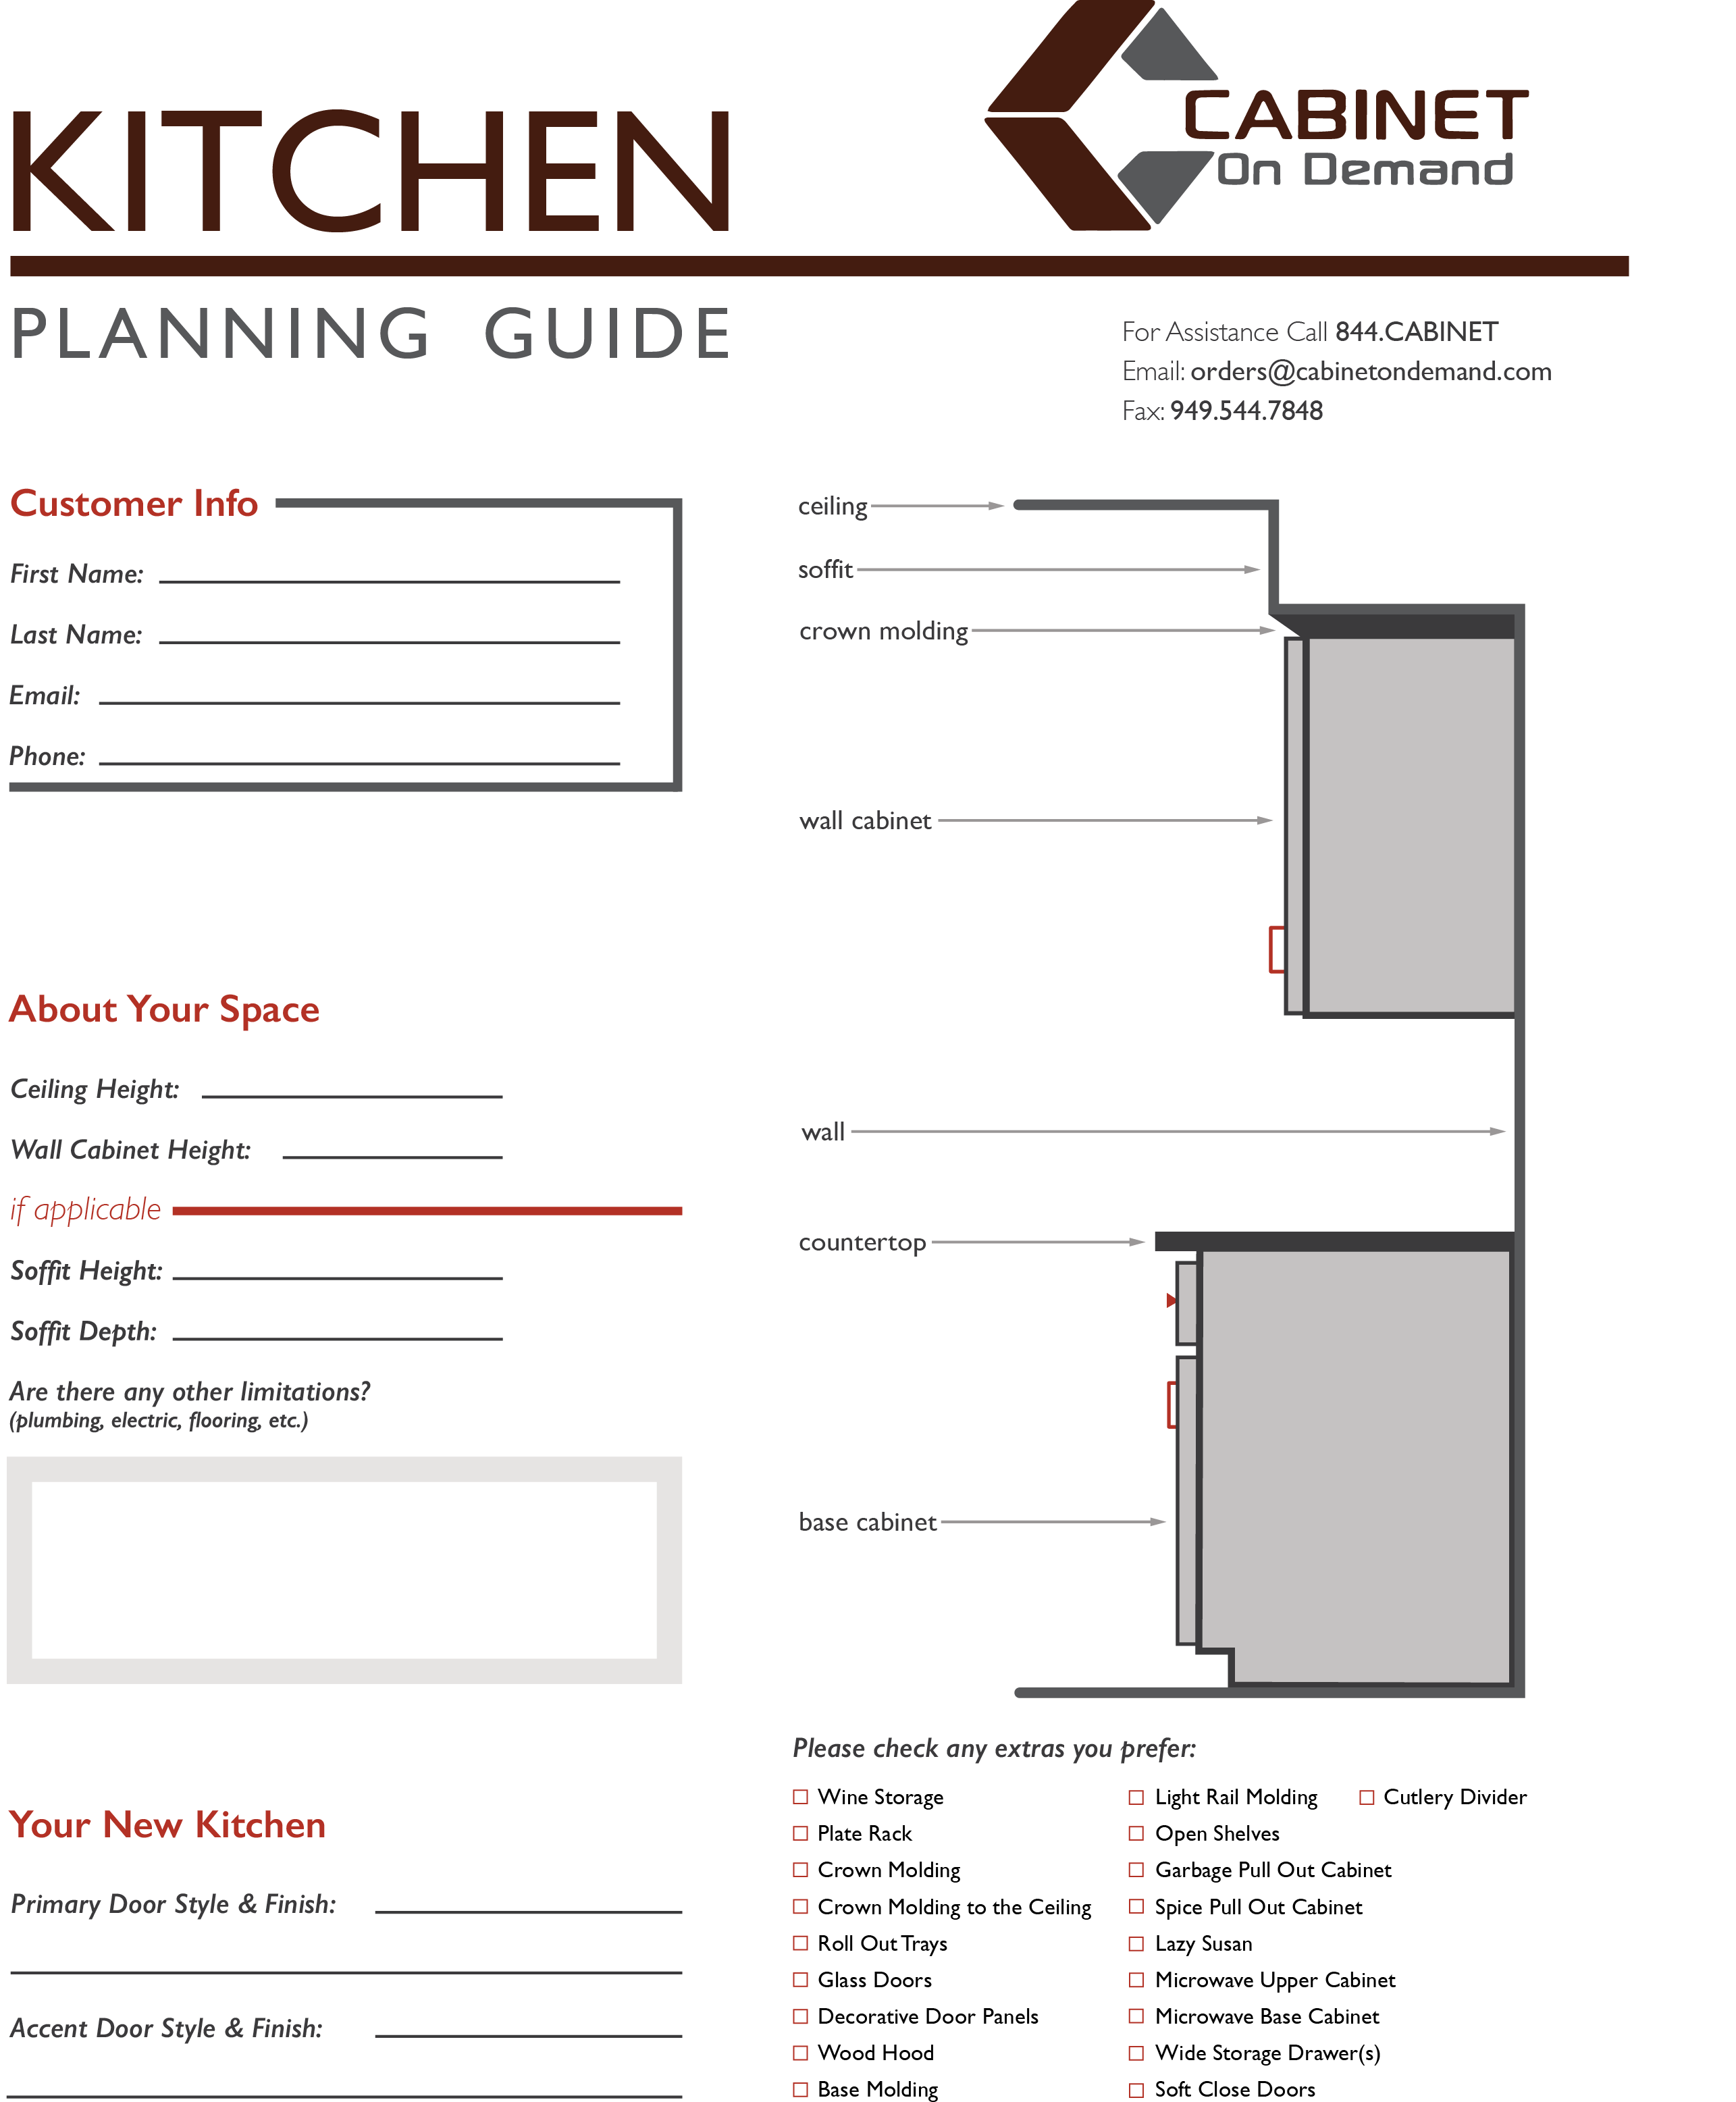 Kitchen Design Planning Guide - Cabinetondemand